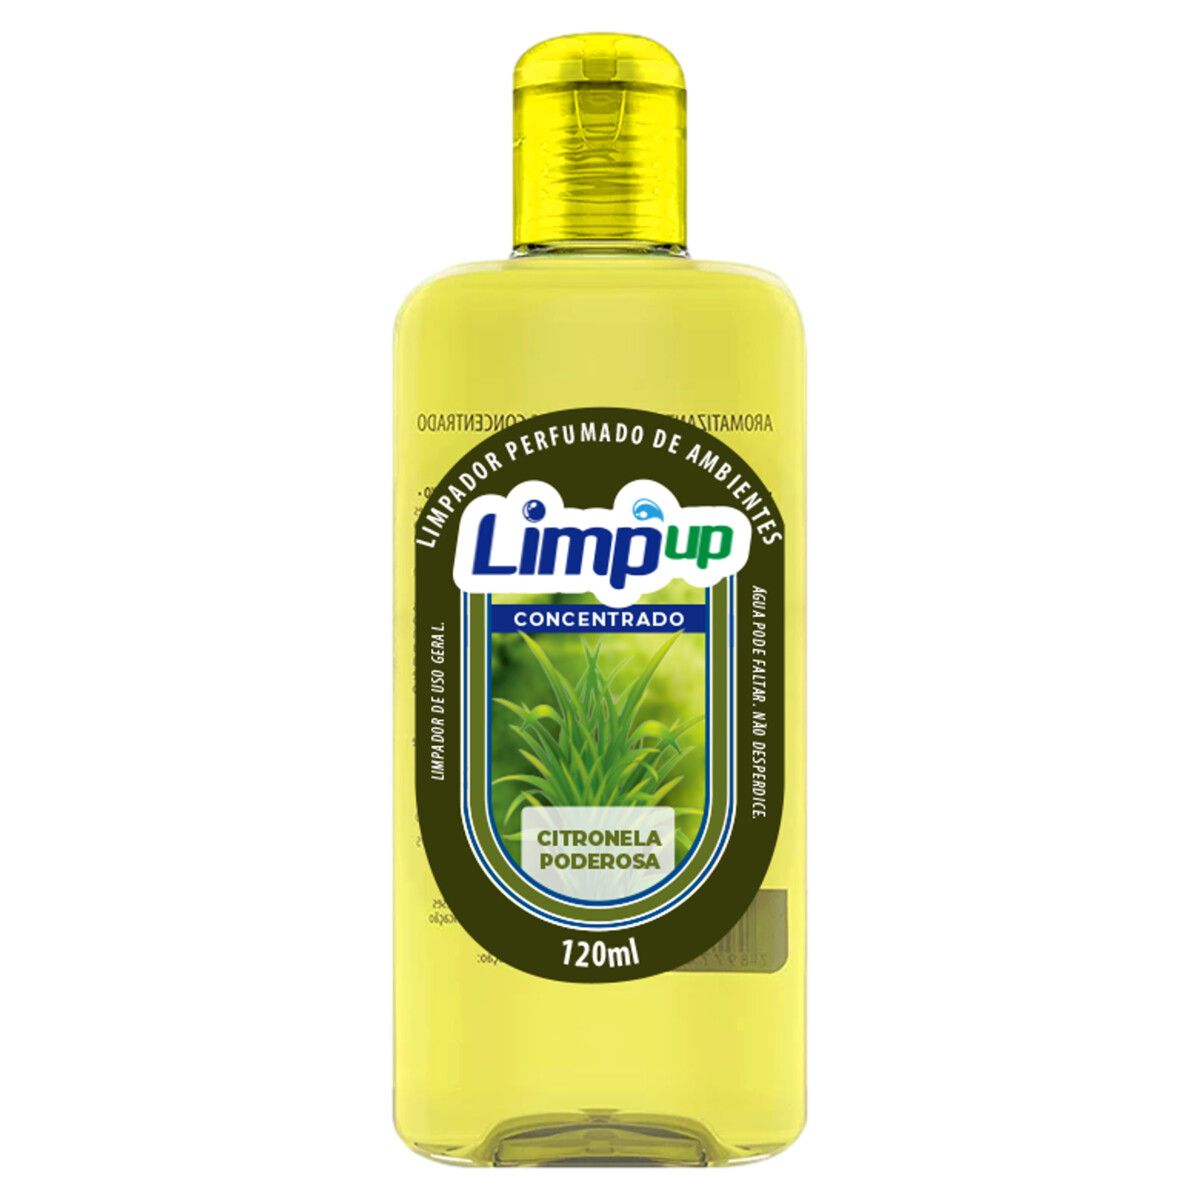 Limpador Perfumado Concentrado Limp Up Citronela Poderosa 120ml image number 0